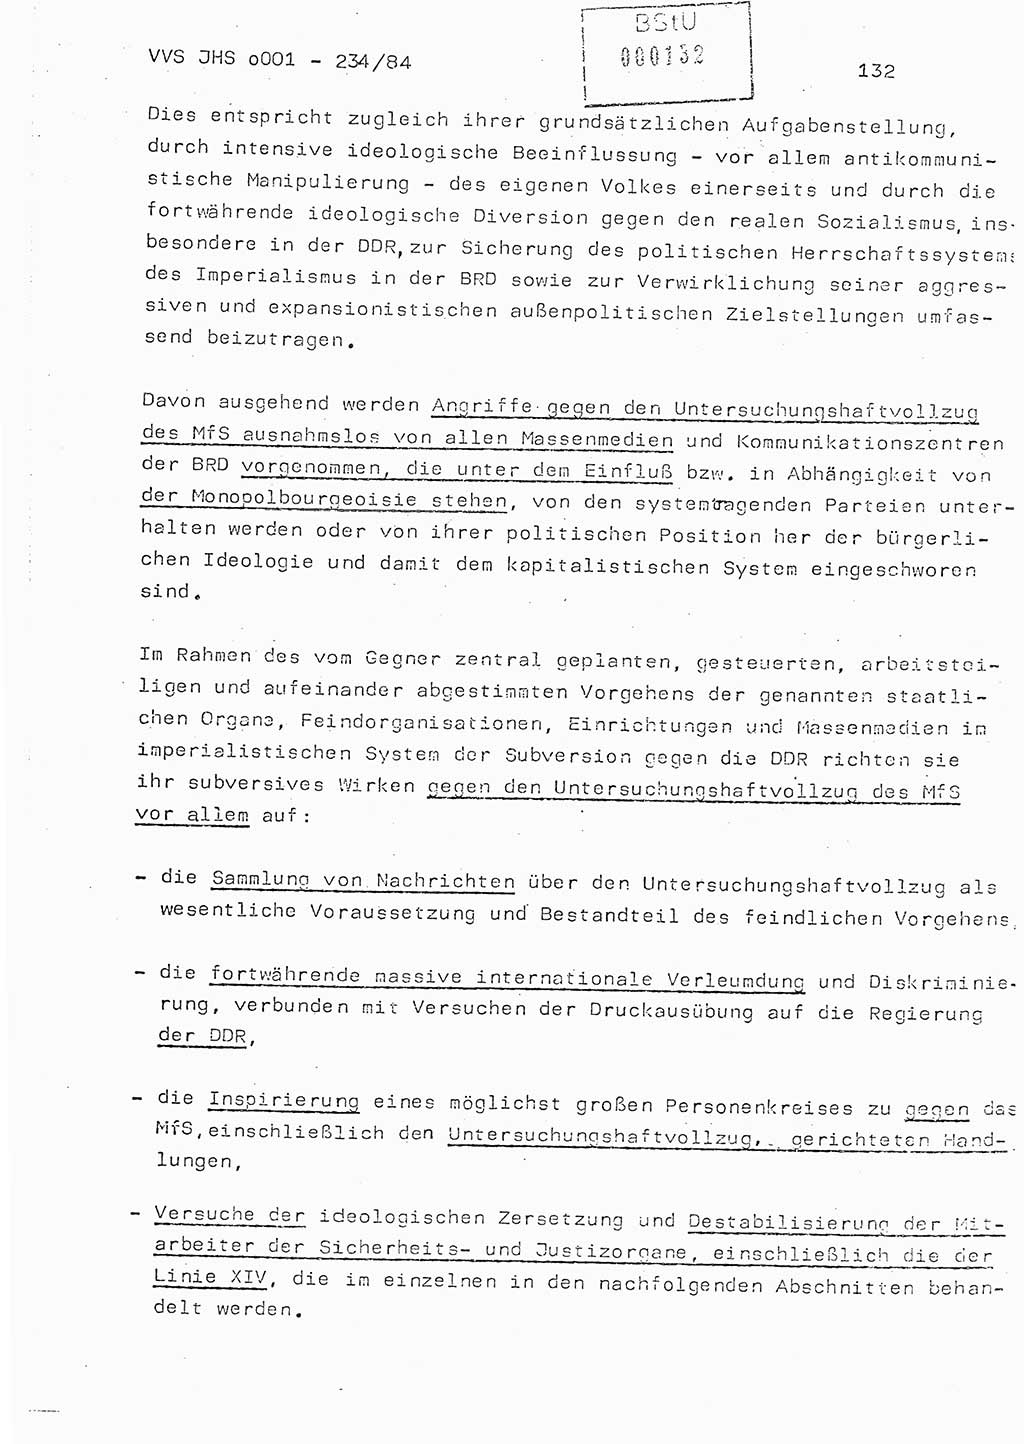 Dissertation Oberst Siegfried Rataizick (Abt. ⅩⅣ), Oberstleutnant Volkmar Heinz (Abt. ⅩⅣ), Oberstleutnant Werner Stein (HA Ⅸ), Hauptmann Heinz Conrad (JHS), Ministerium für Staatssicherheit (MfS) [Deutsche Demokratische Republik (DDR)], Juristische Hochschule (JHS), Vertrauliche Verschlußsache (VVS) o001-234/84, Potsdam 1984, Seite 132 (Diss. MfS DDR JHS VVS o001-234/84 1984, S. 132)